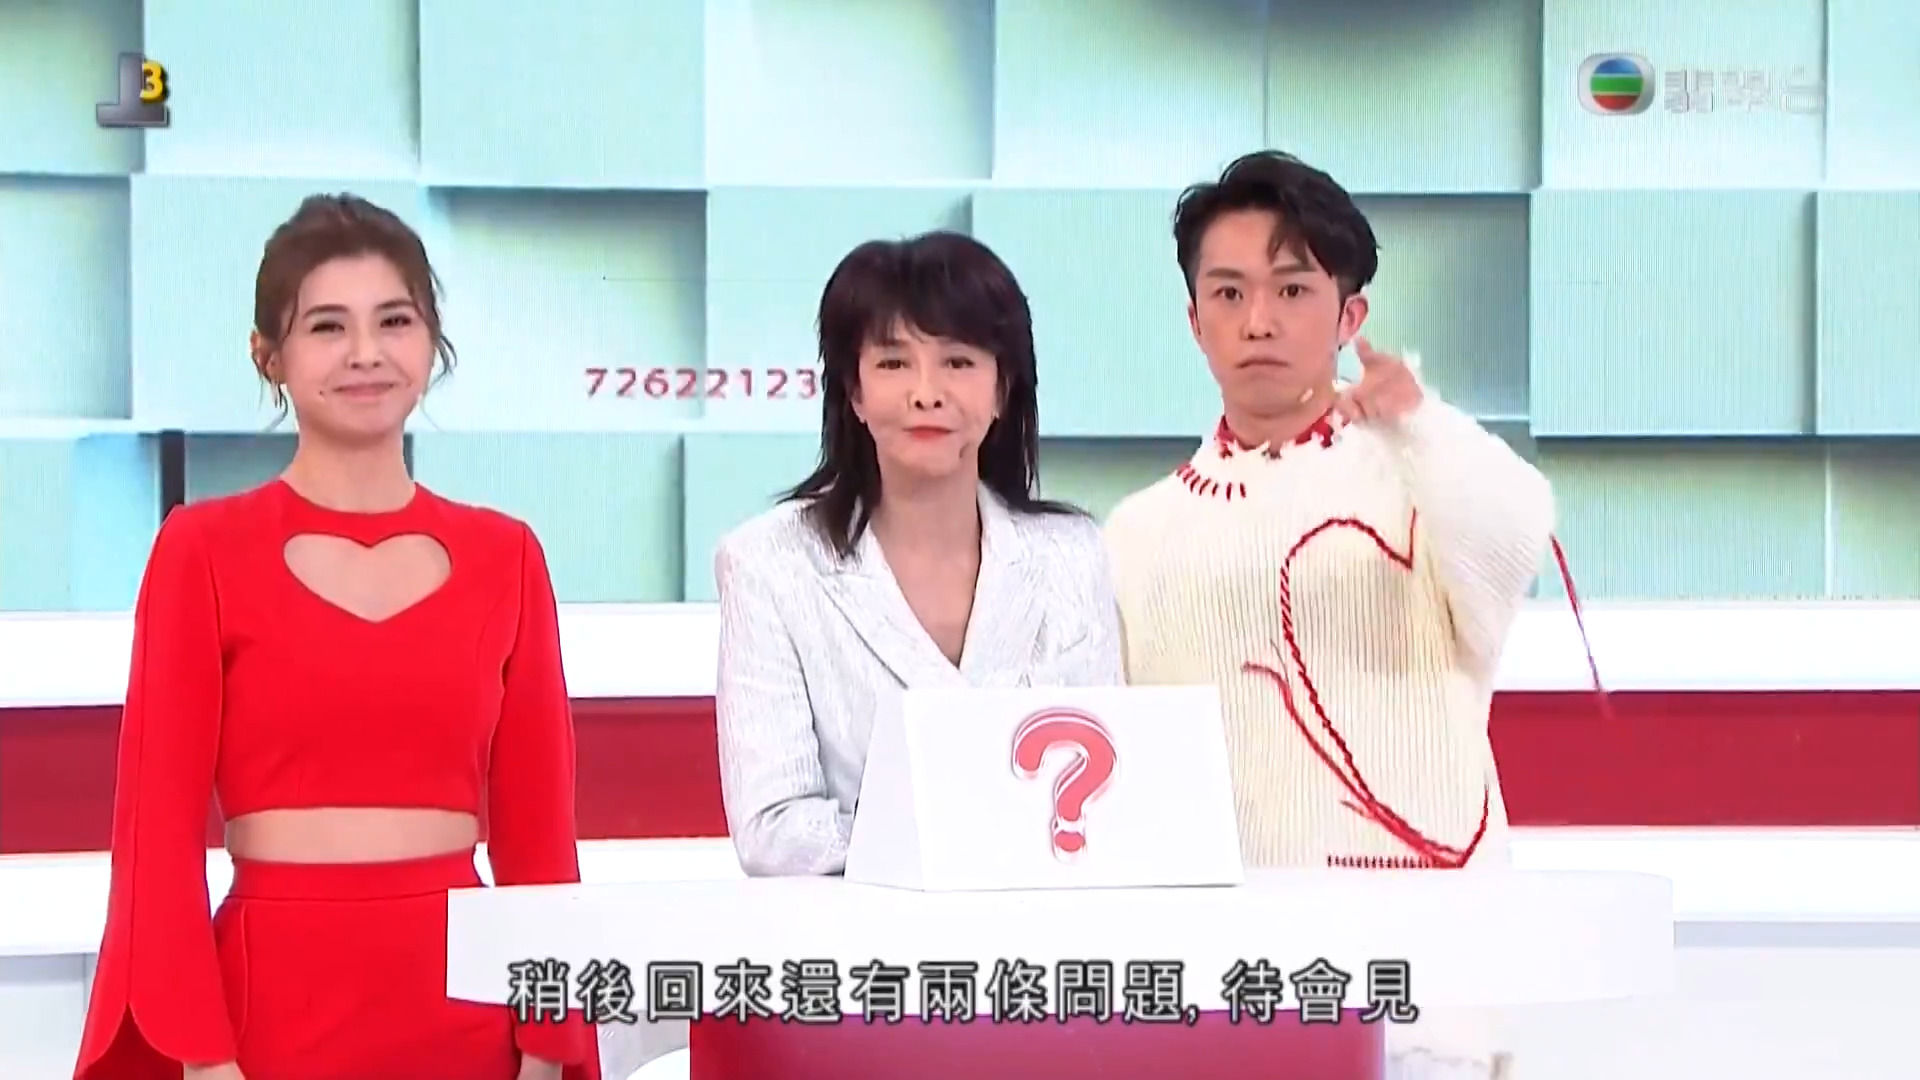 答得快 好世界-TVB 55th Anniversary Quiz Show